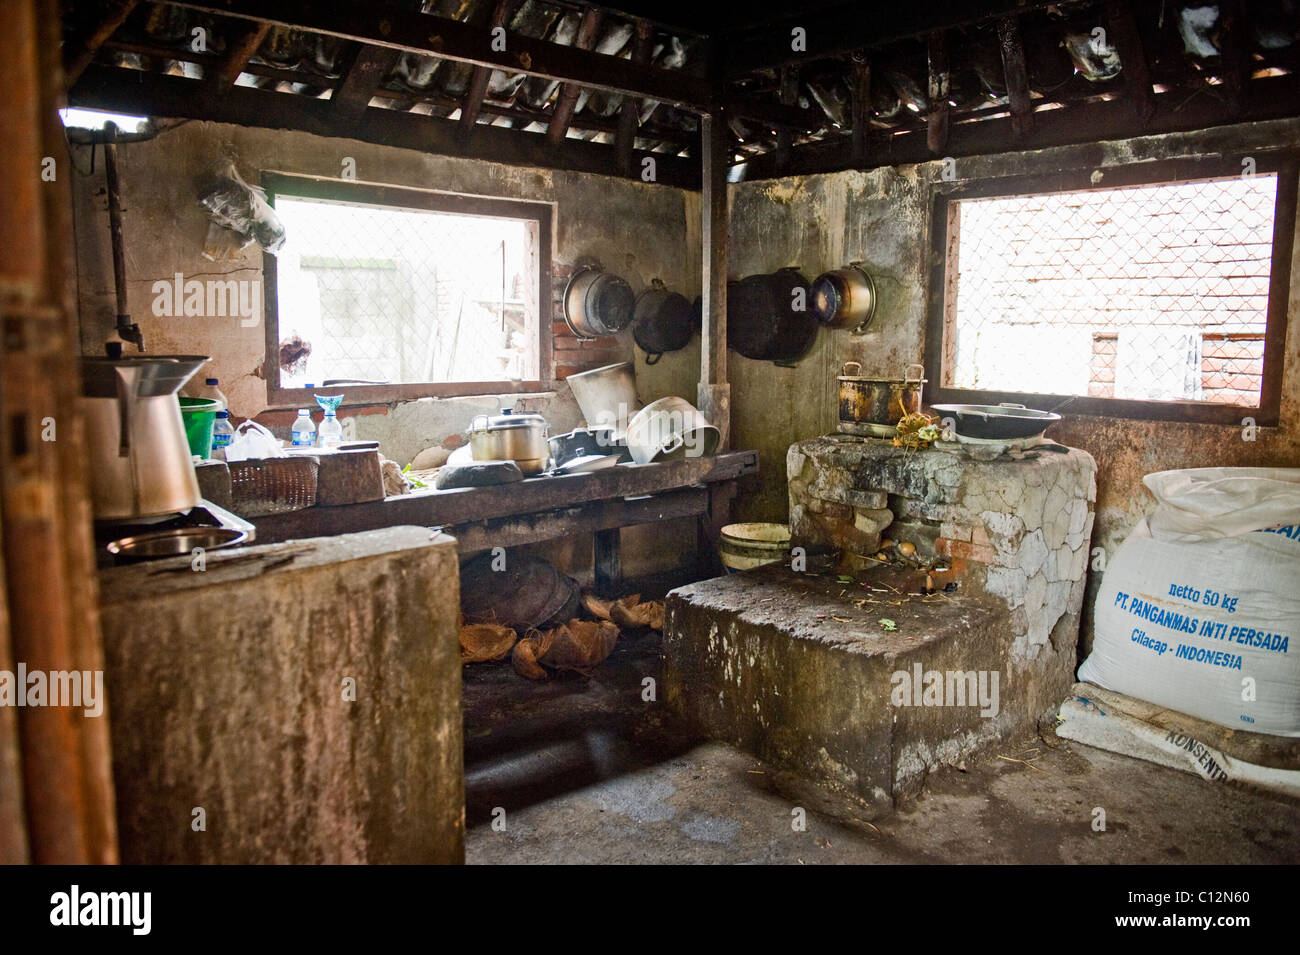 Una tradizionale cucina Balinese in un piccolo villaggio dispone di un forno a legna, un sacco di riso e un pavimento di immondizia. Foto Stock